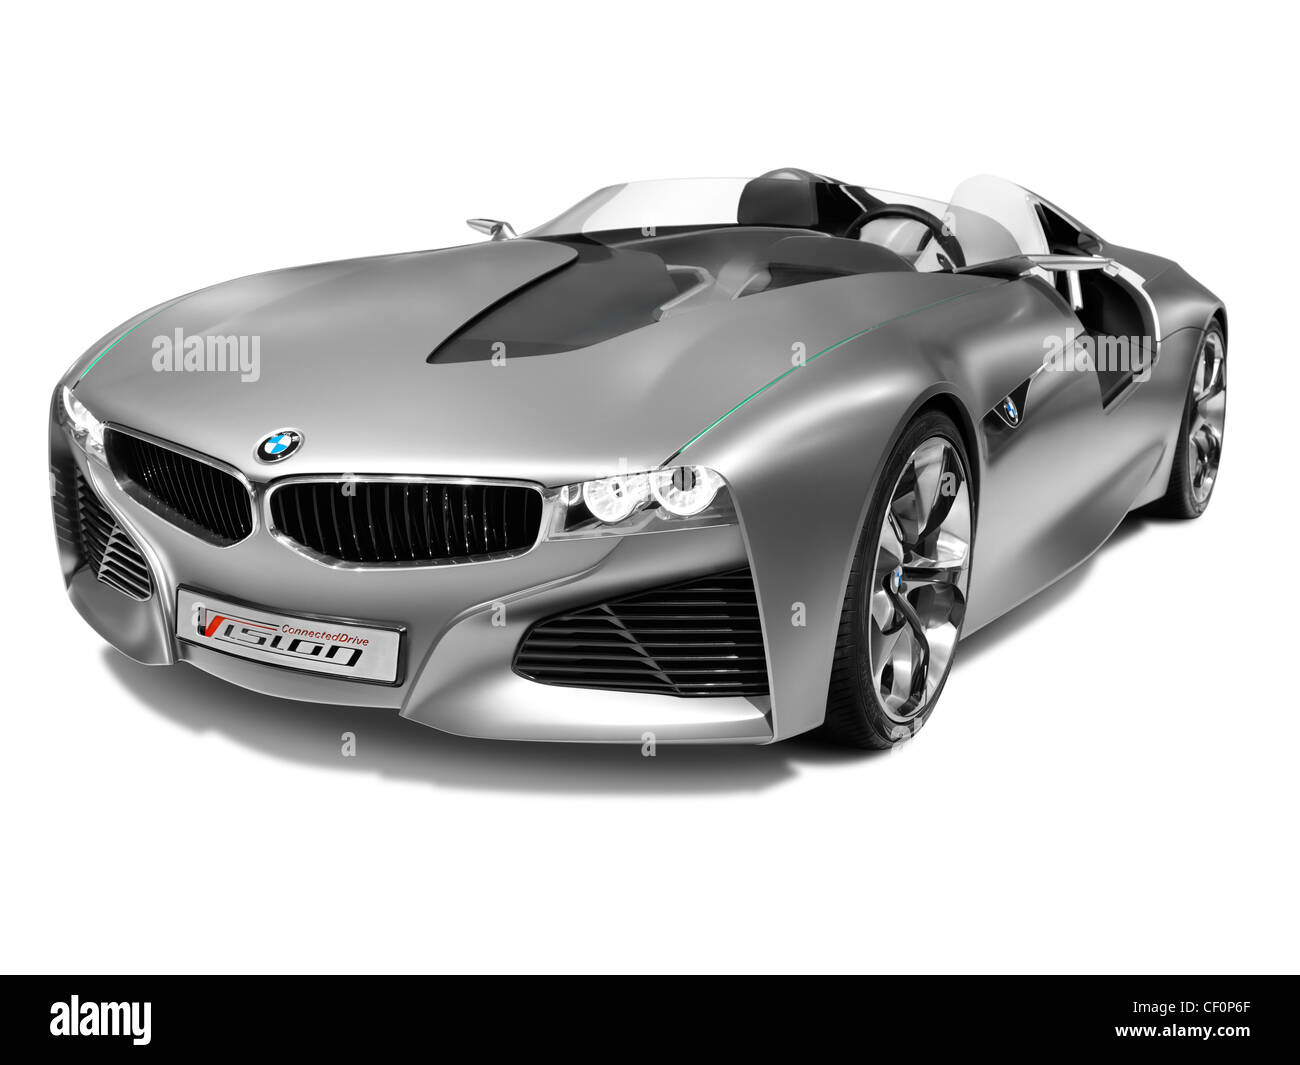 Licenza e stampe a MaximImages.com - BMW auto di lusso, foto di stock automobilistico. Foto Stock